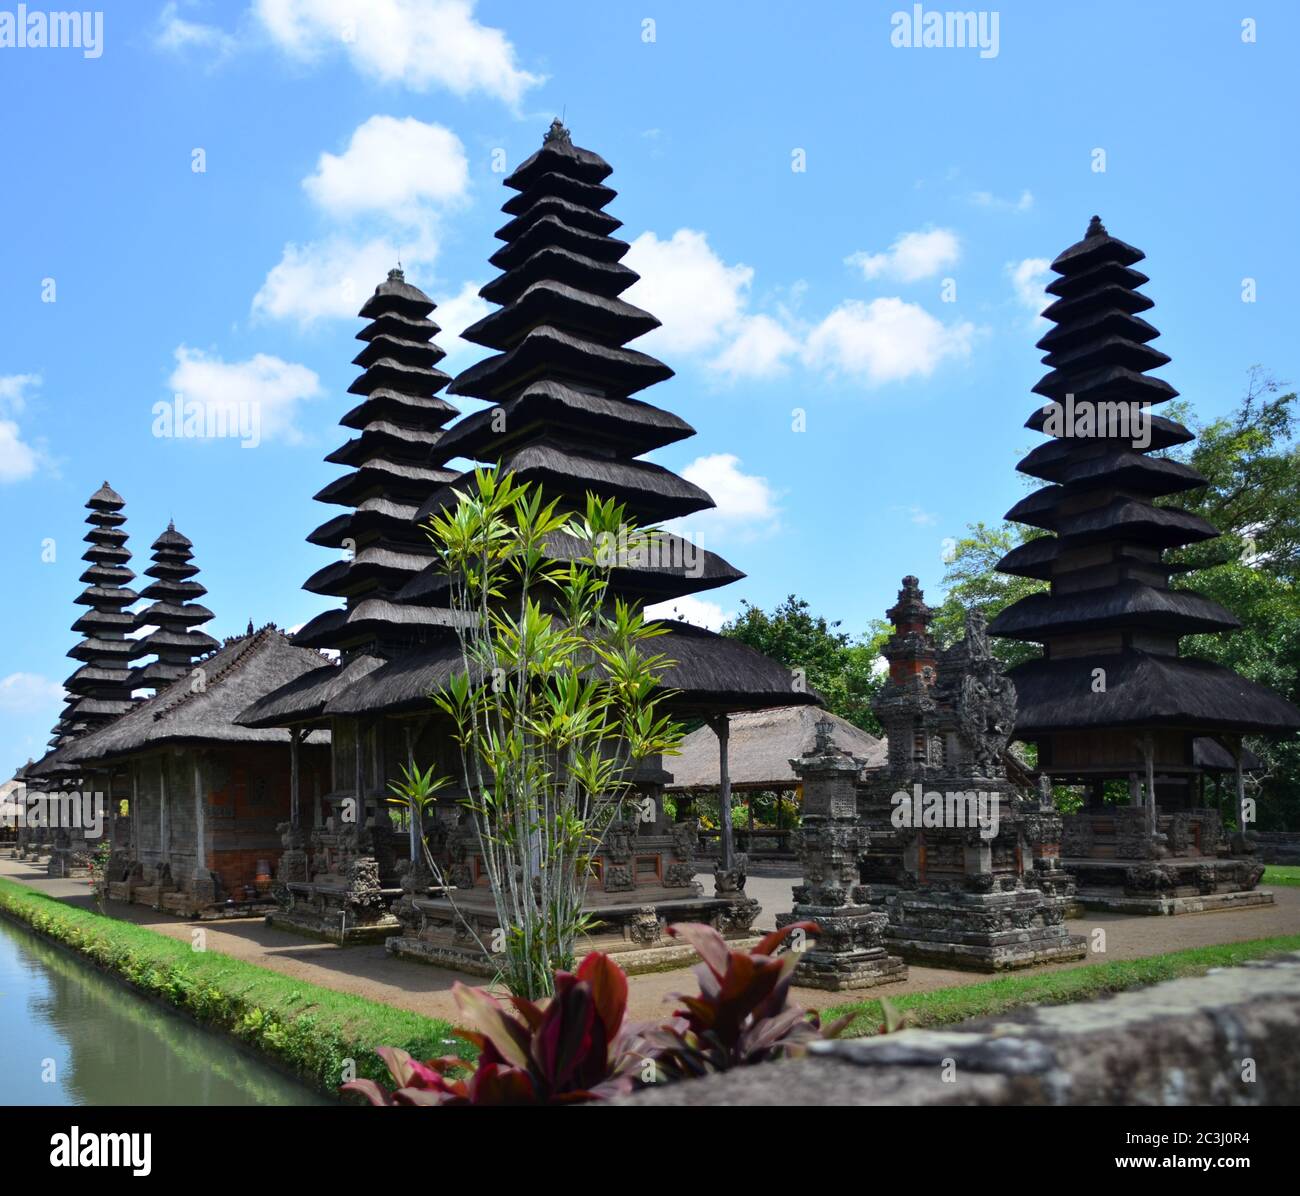 Taman Ayun Tempel Mengwi Bali ist eines der UNESCO Weltkulturerbe in Bali. Der große Tempel von Mengwi, Bali, Indonesien, Südostasien Stockfoto